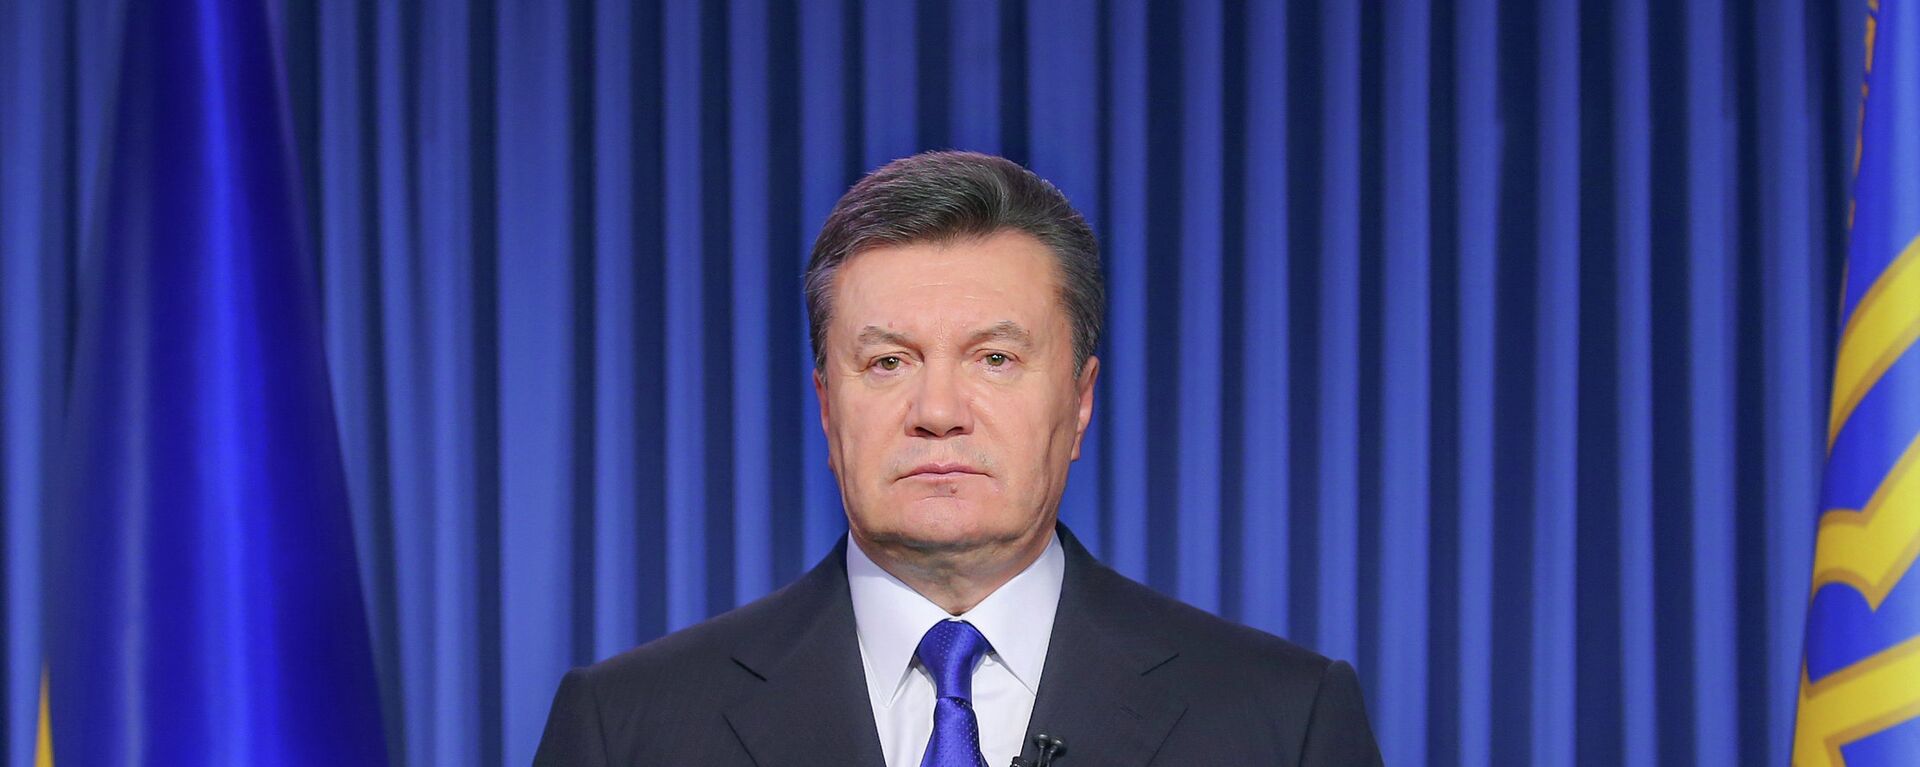 Президент Украины Виктор Янукович выступает с телеобращением в связи с обострением ситуации на Украине. - Sputnik Таджикистан, 1920, 17.08.2021